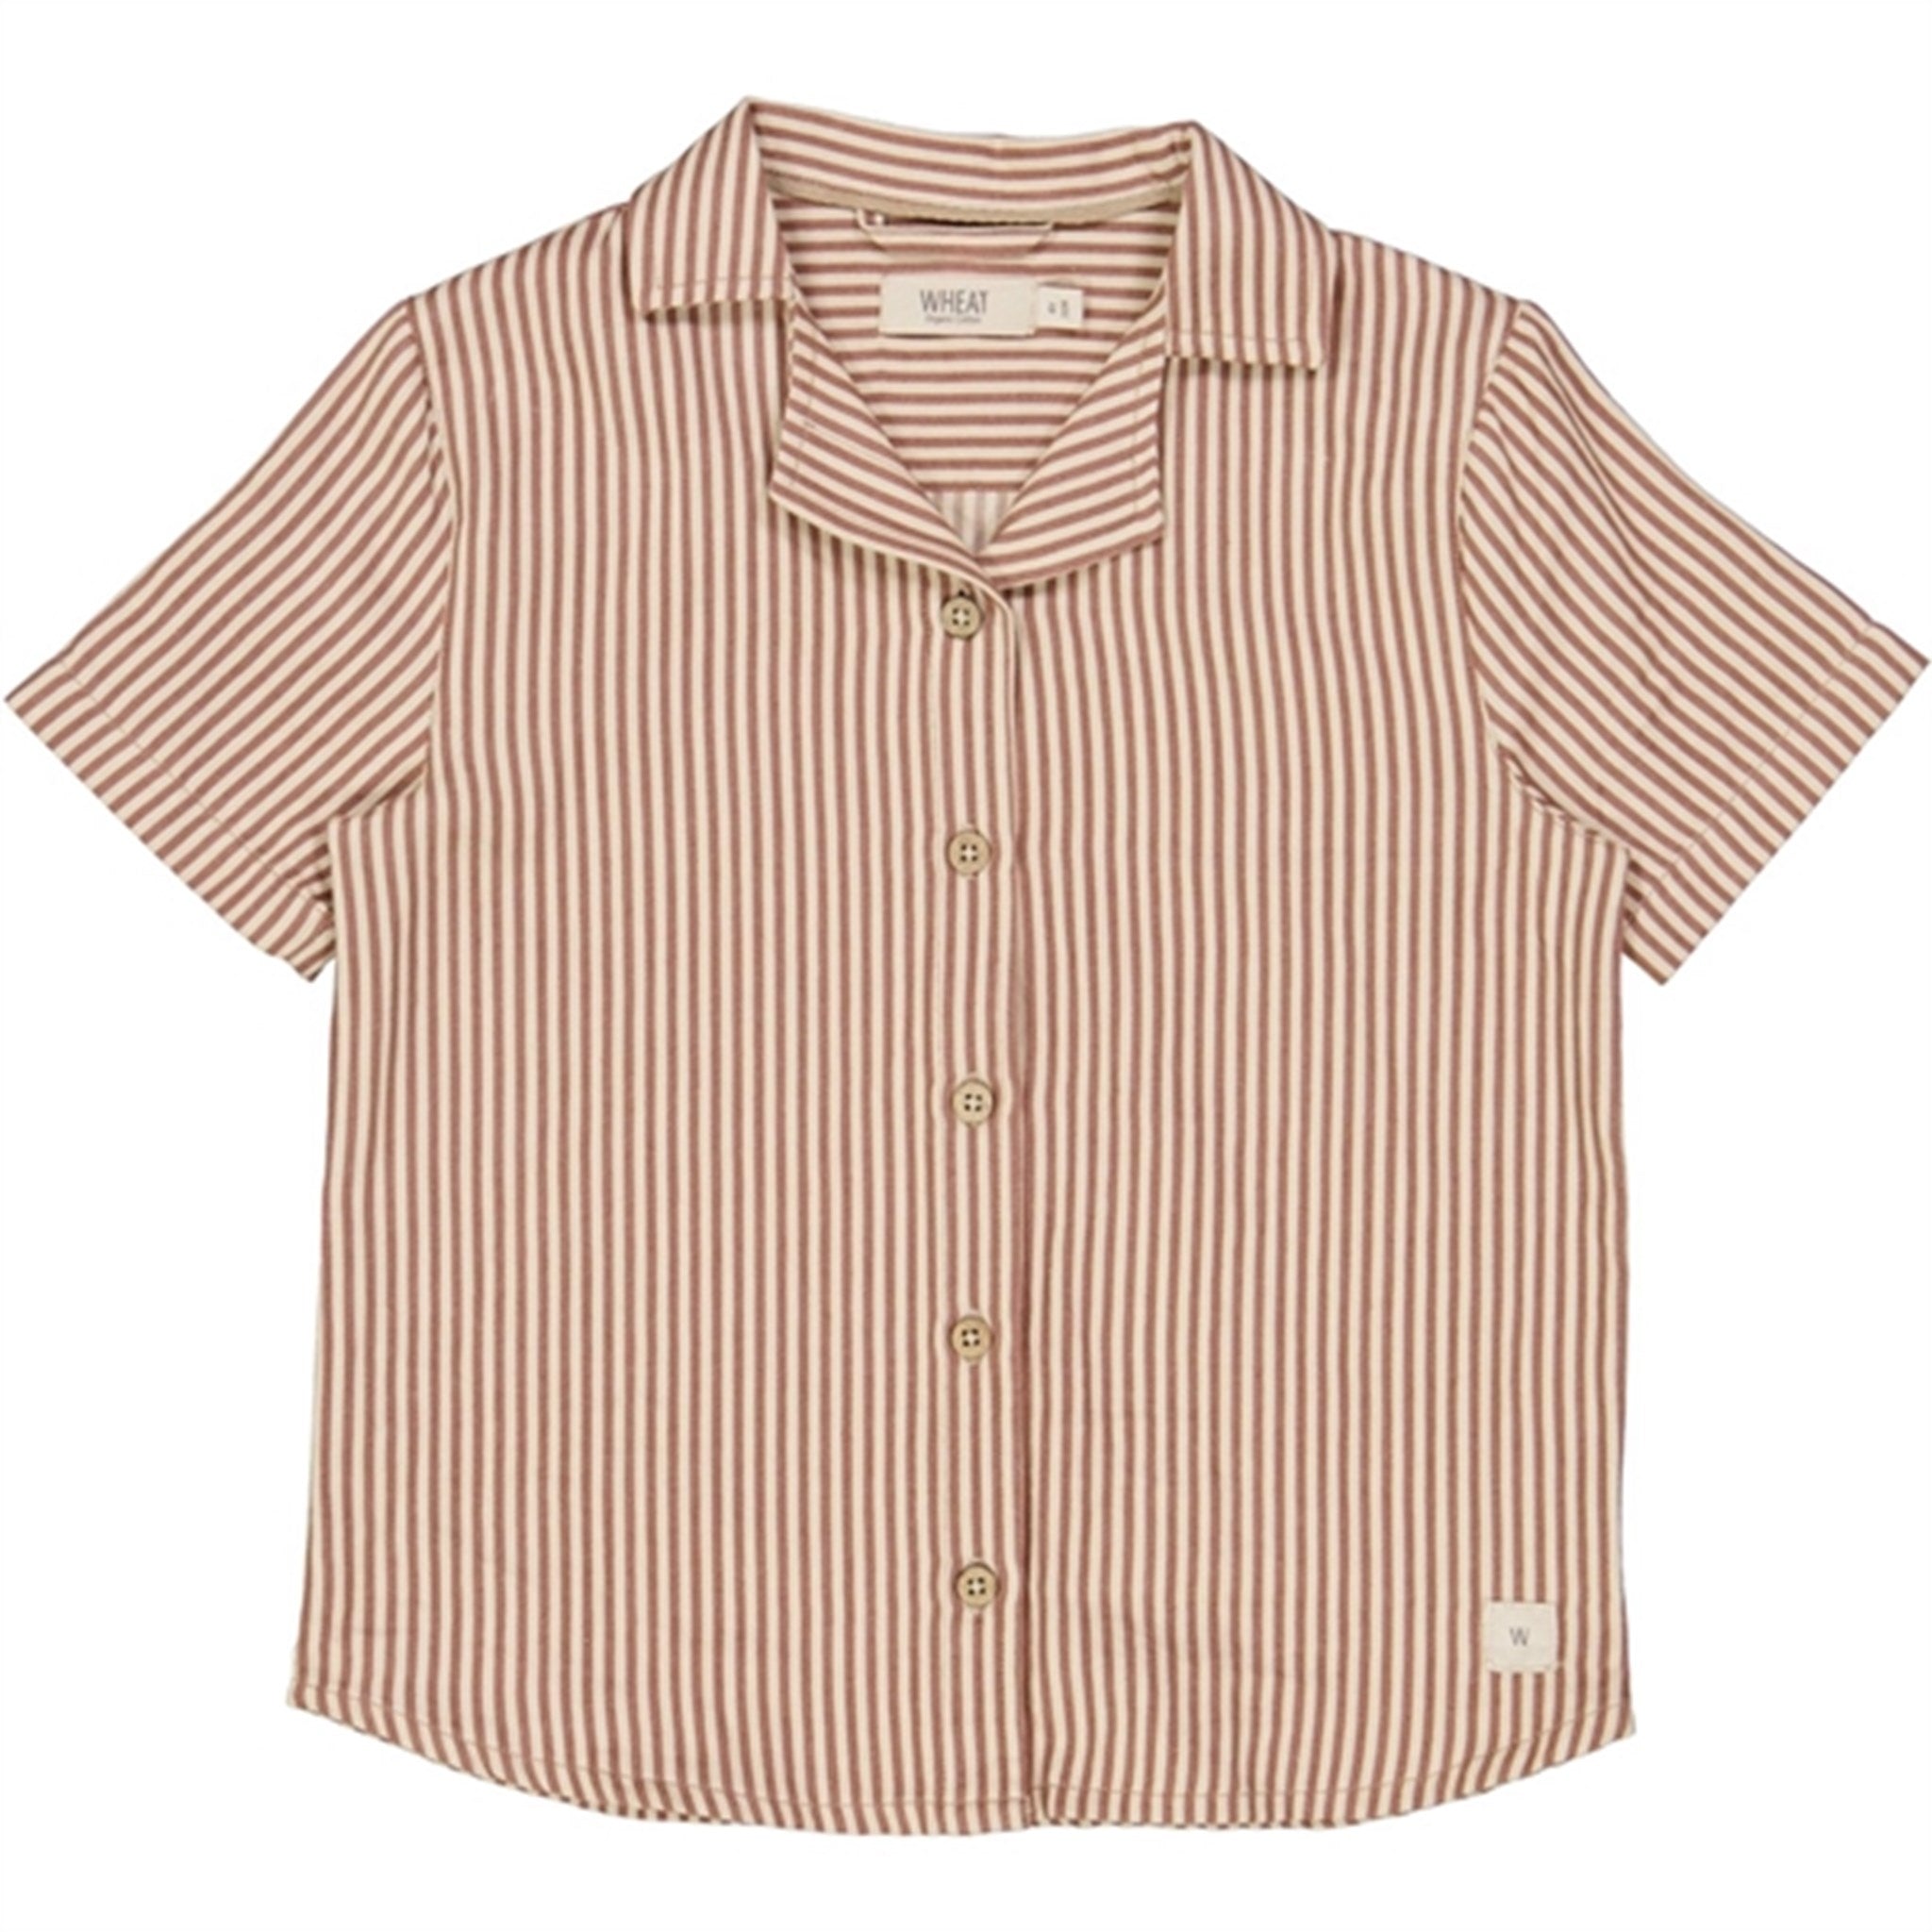 Wheat Vintage Stripe Anker Shirt